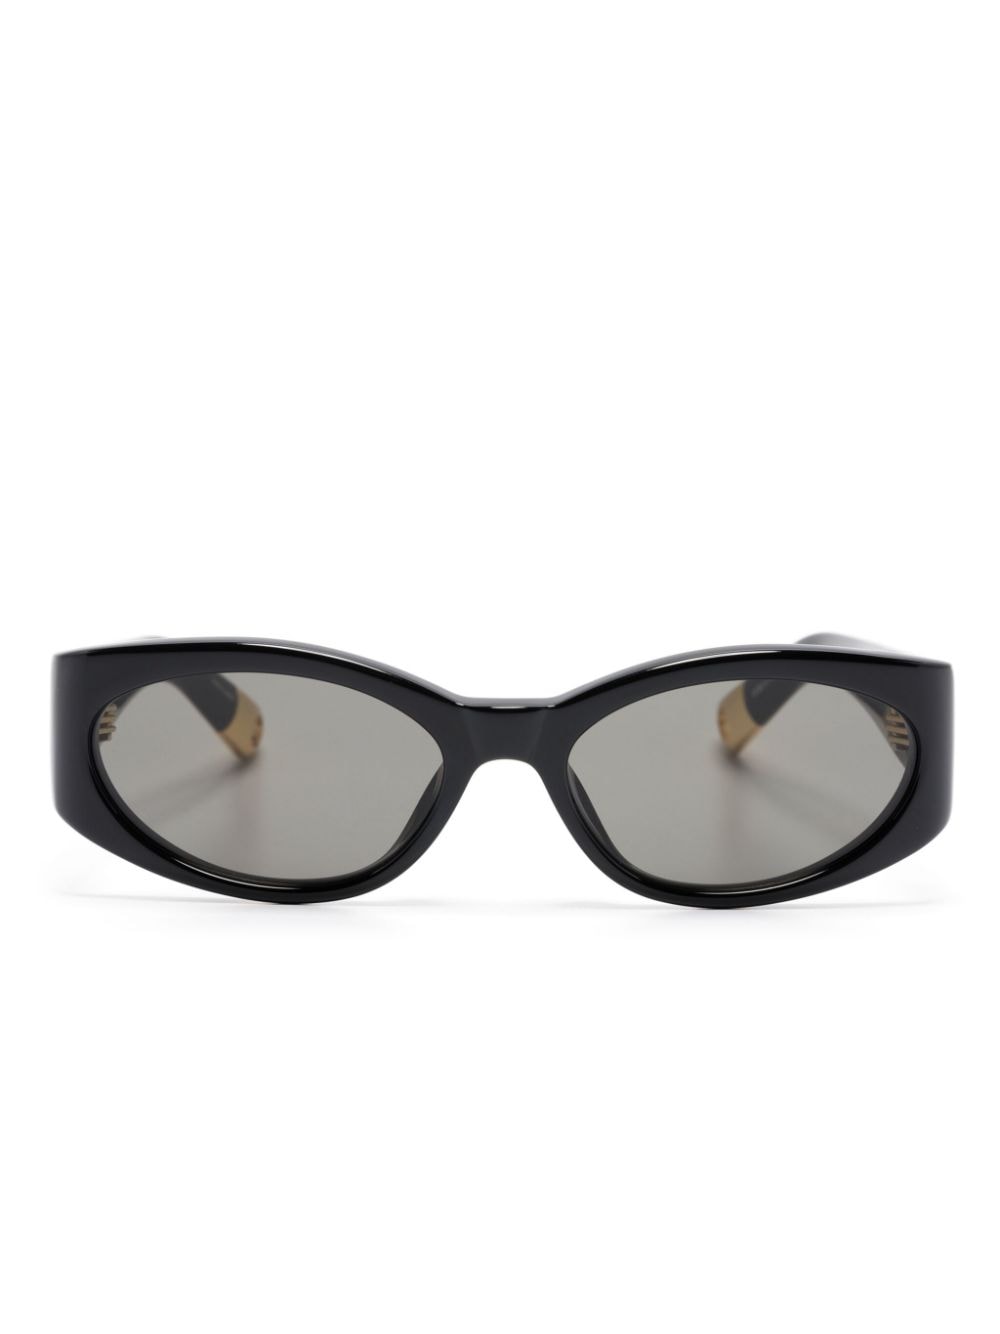 Jacquemus Les lunettes Ovalo oval-frame sunglasses - Black von Jacquemus